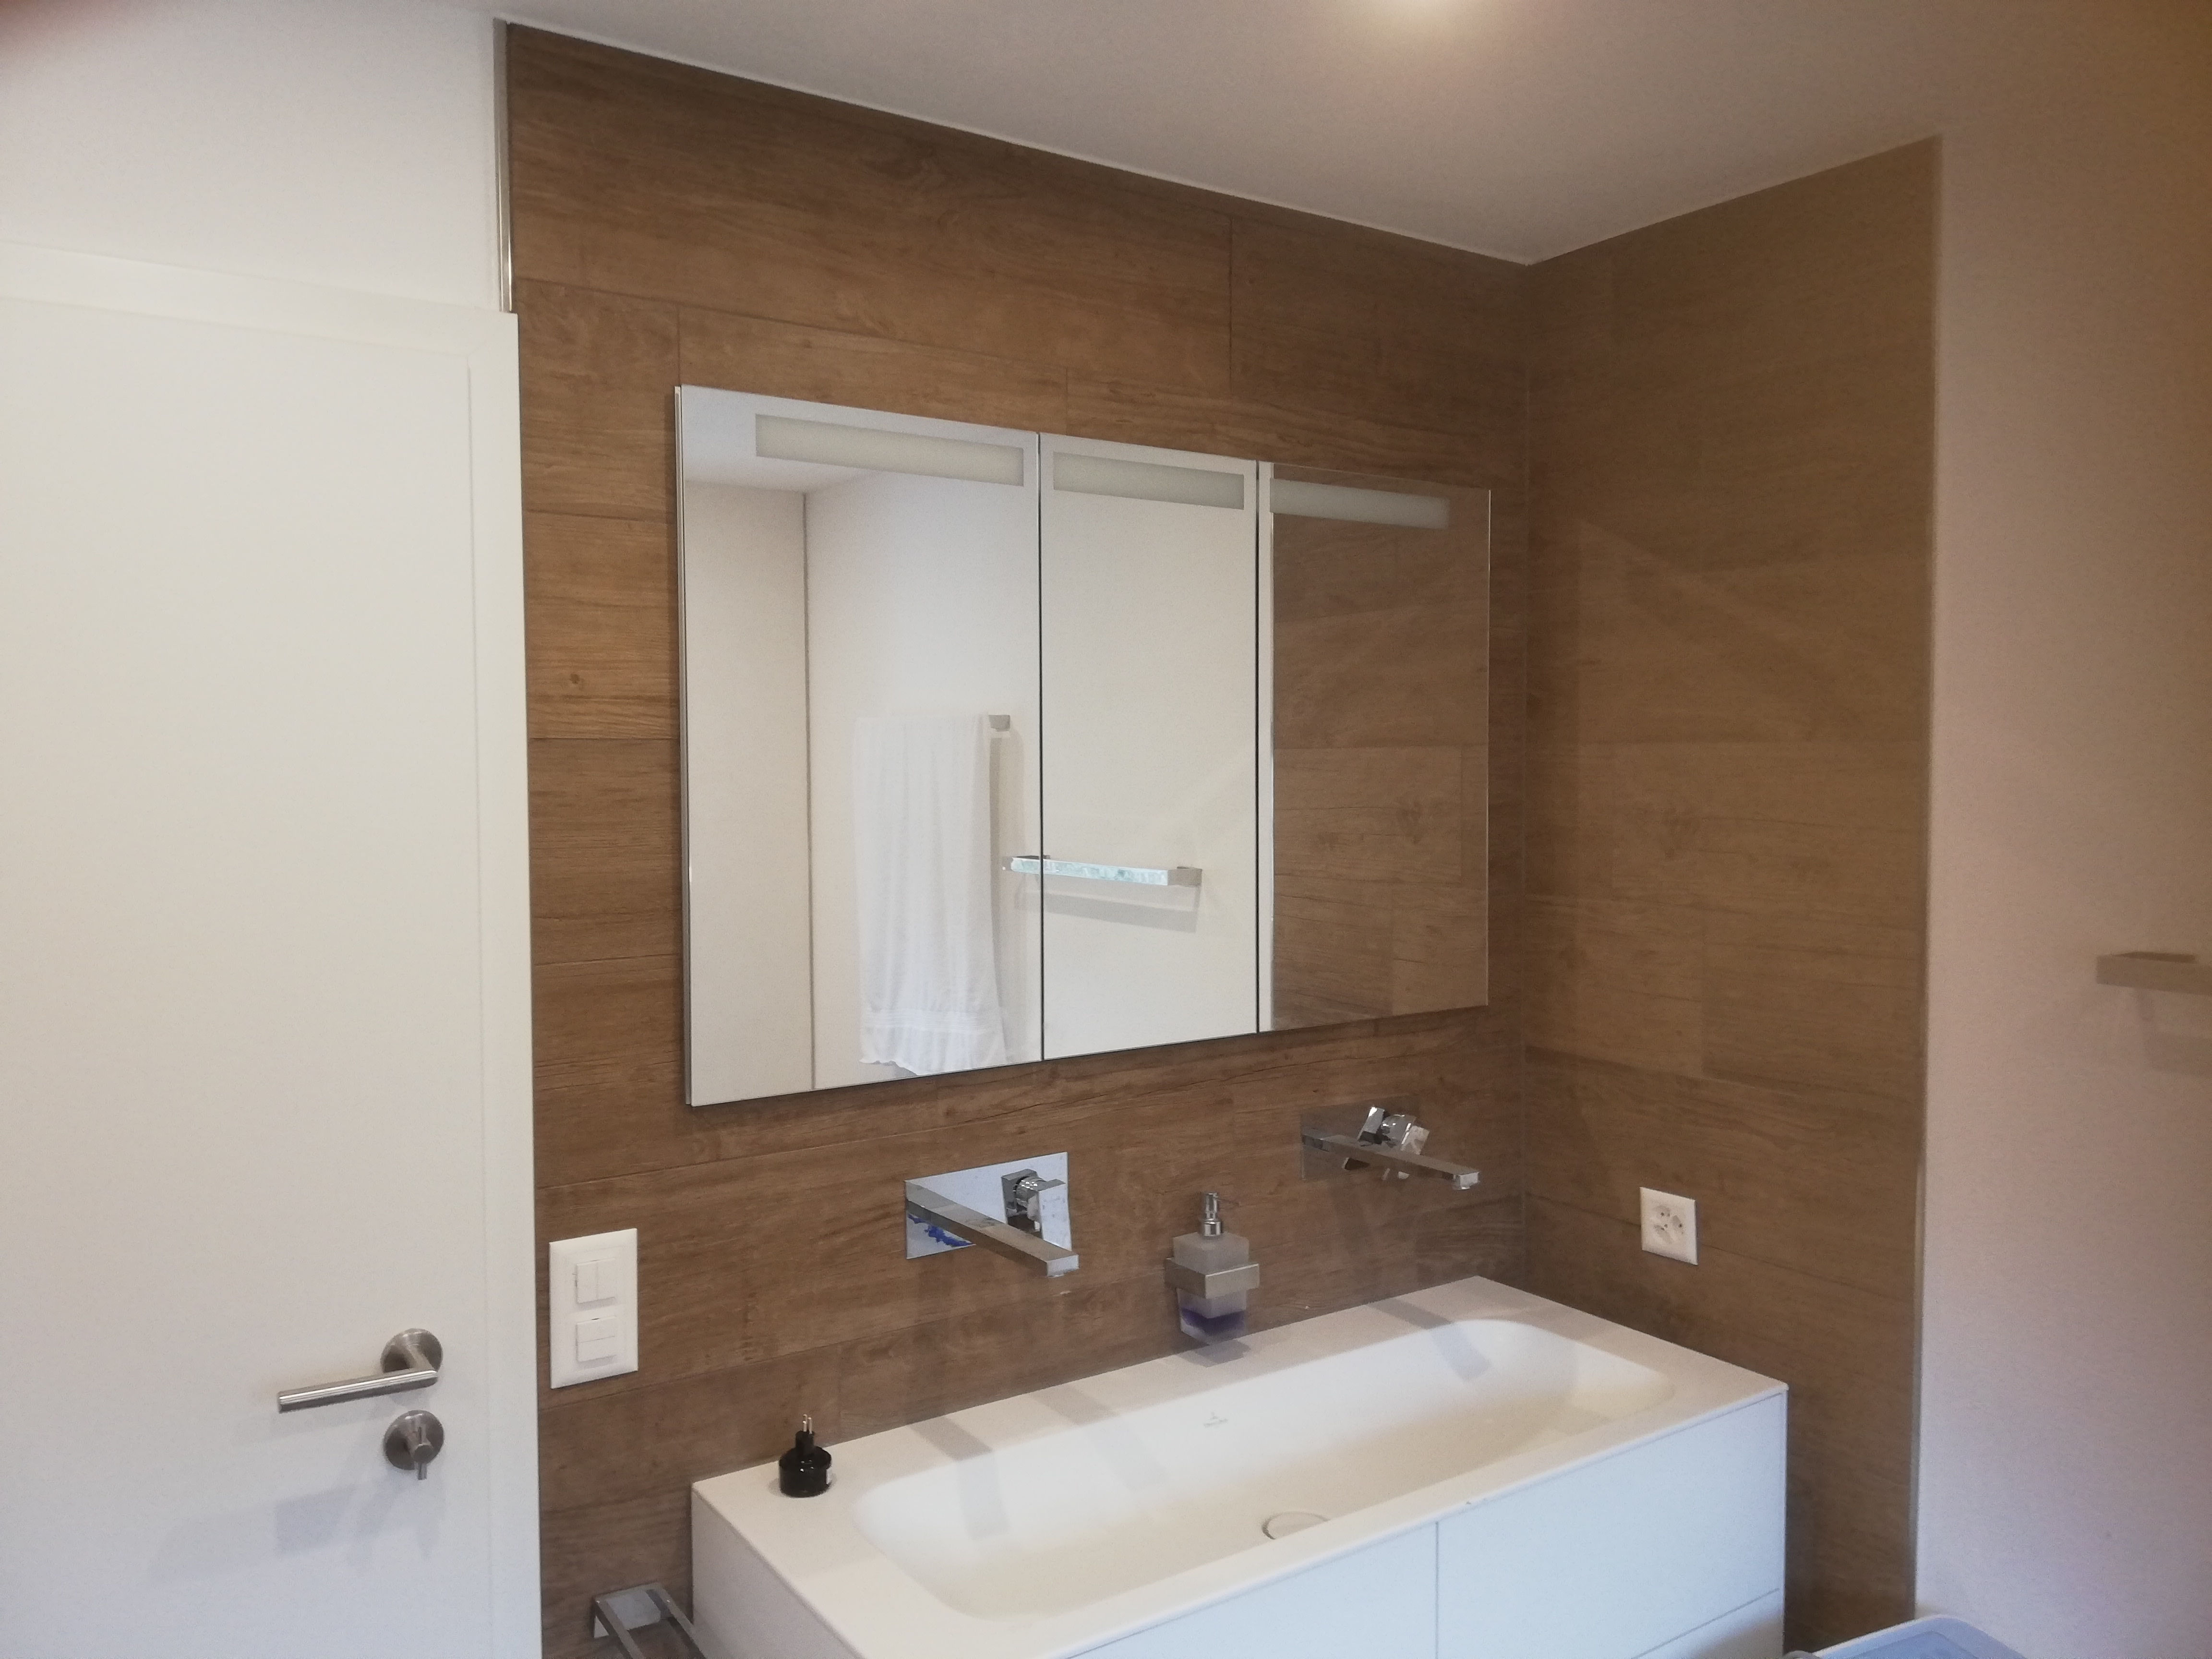 Bild von Bad in Neubau EFH, 20x120 cm, Holz-Optik, Einbau-Spiegelschrank und Unterputz-Armaturen